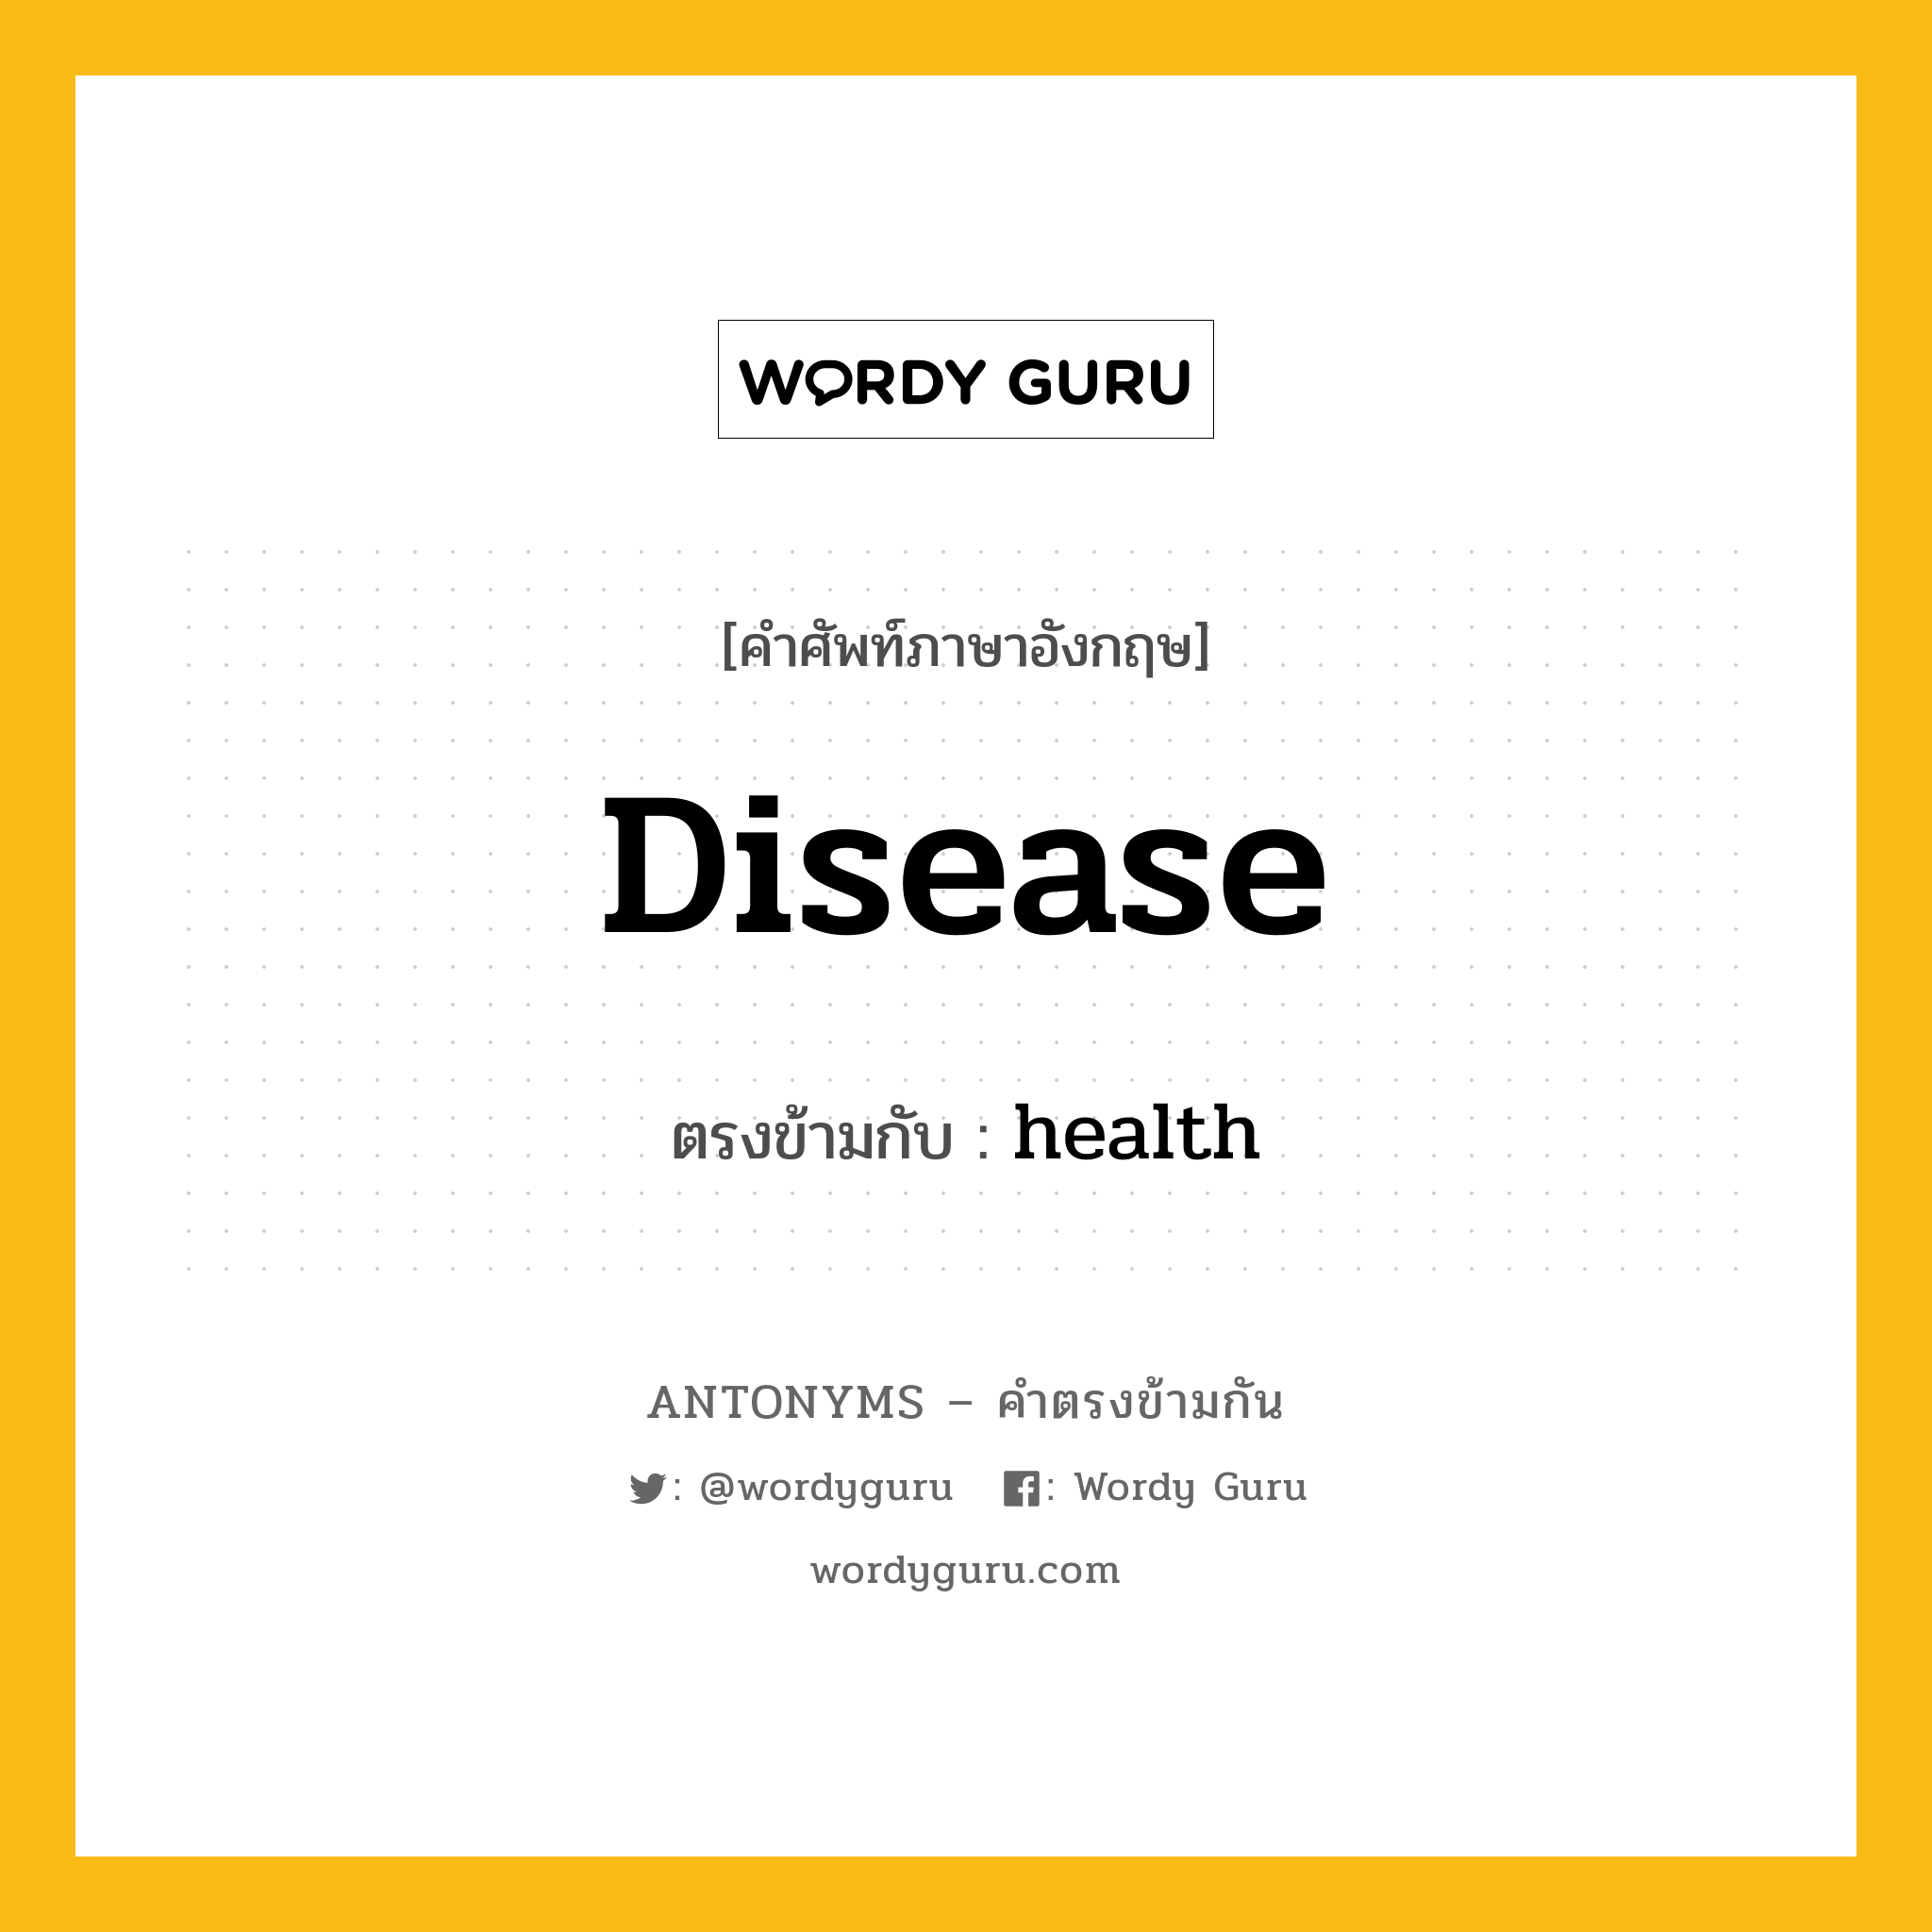 disease เป็นคำตรงข้ามกับคำไหนบ้าง?, คำศัพท์ภาษาอังกฤษ disease ตรงข้ามกับ health หมวด health